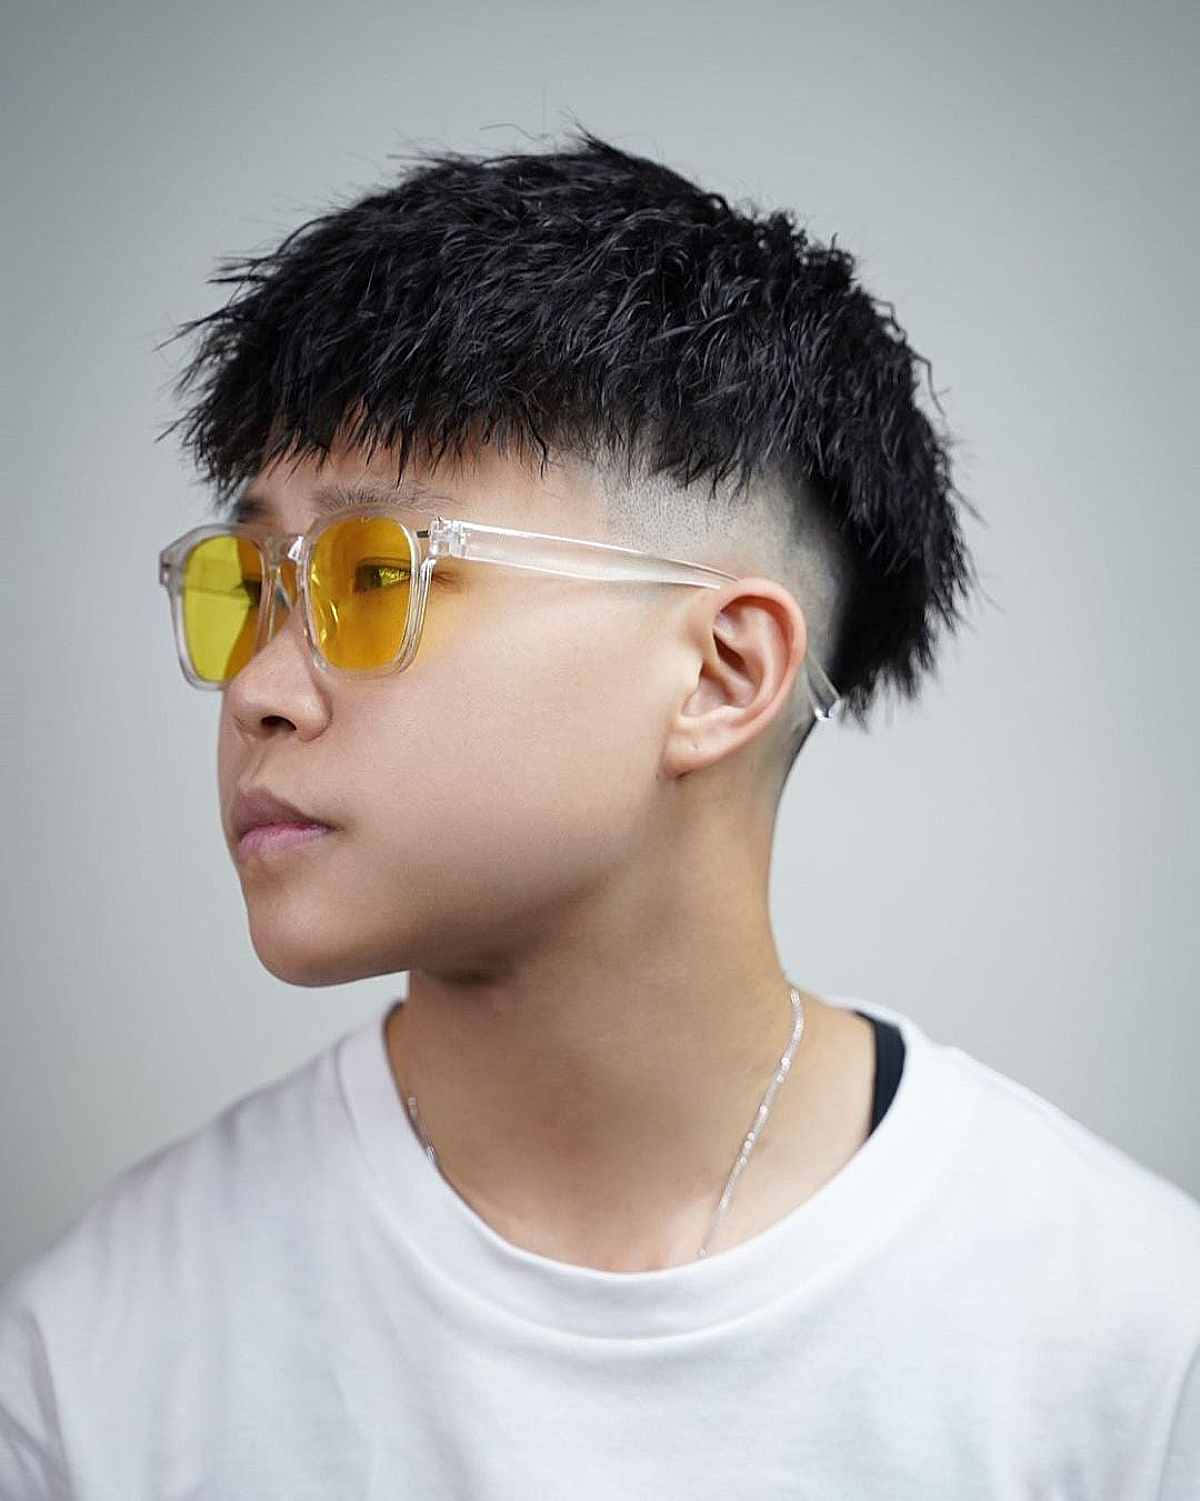 Hot Teen Boy Model For Glasses Wallpaper